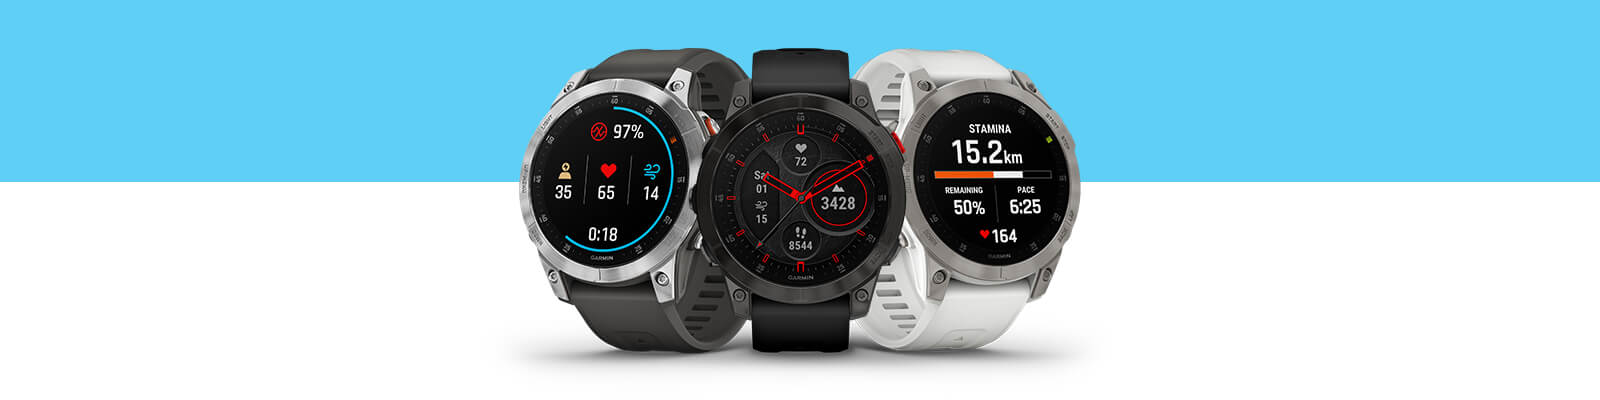 epix™ - Super Sharp Display | Versatile Athlete | Which Watch | Garmin